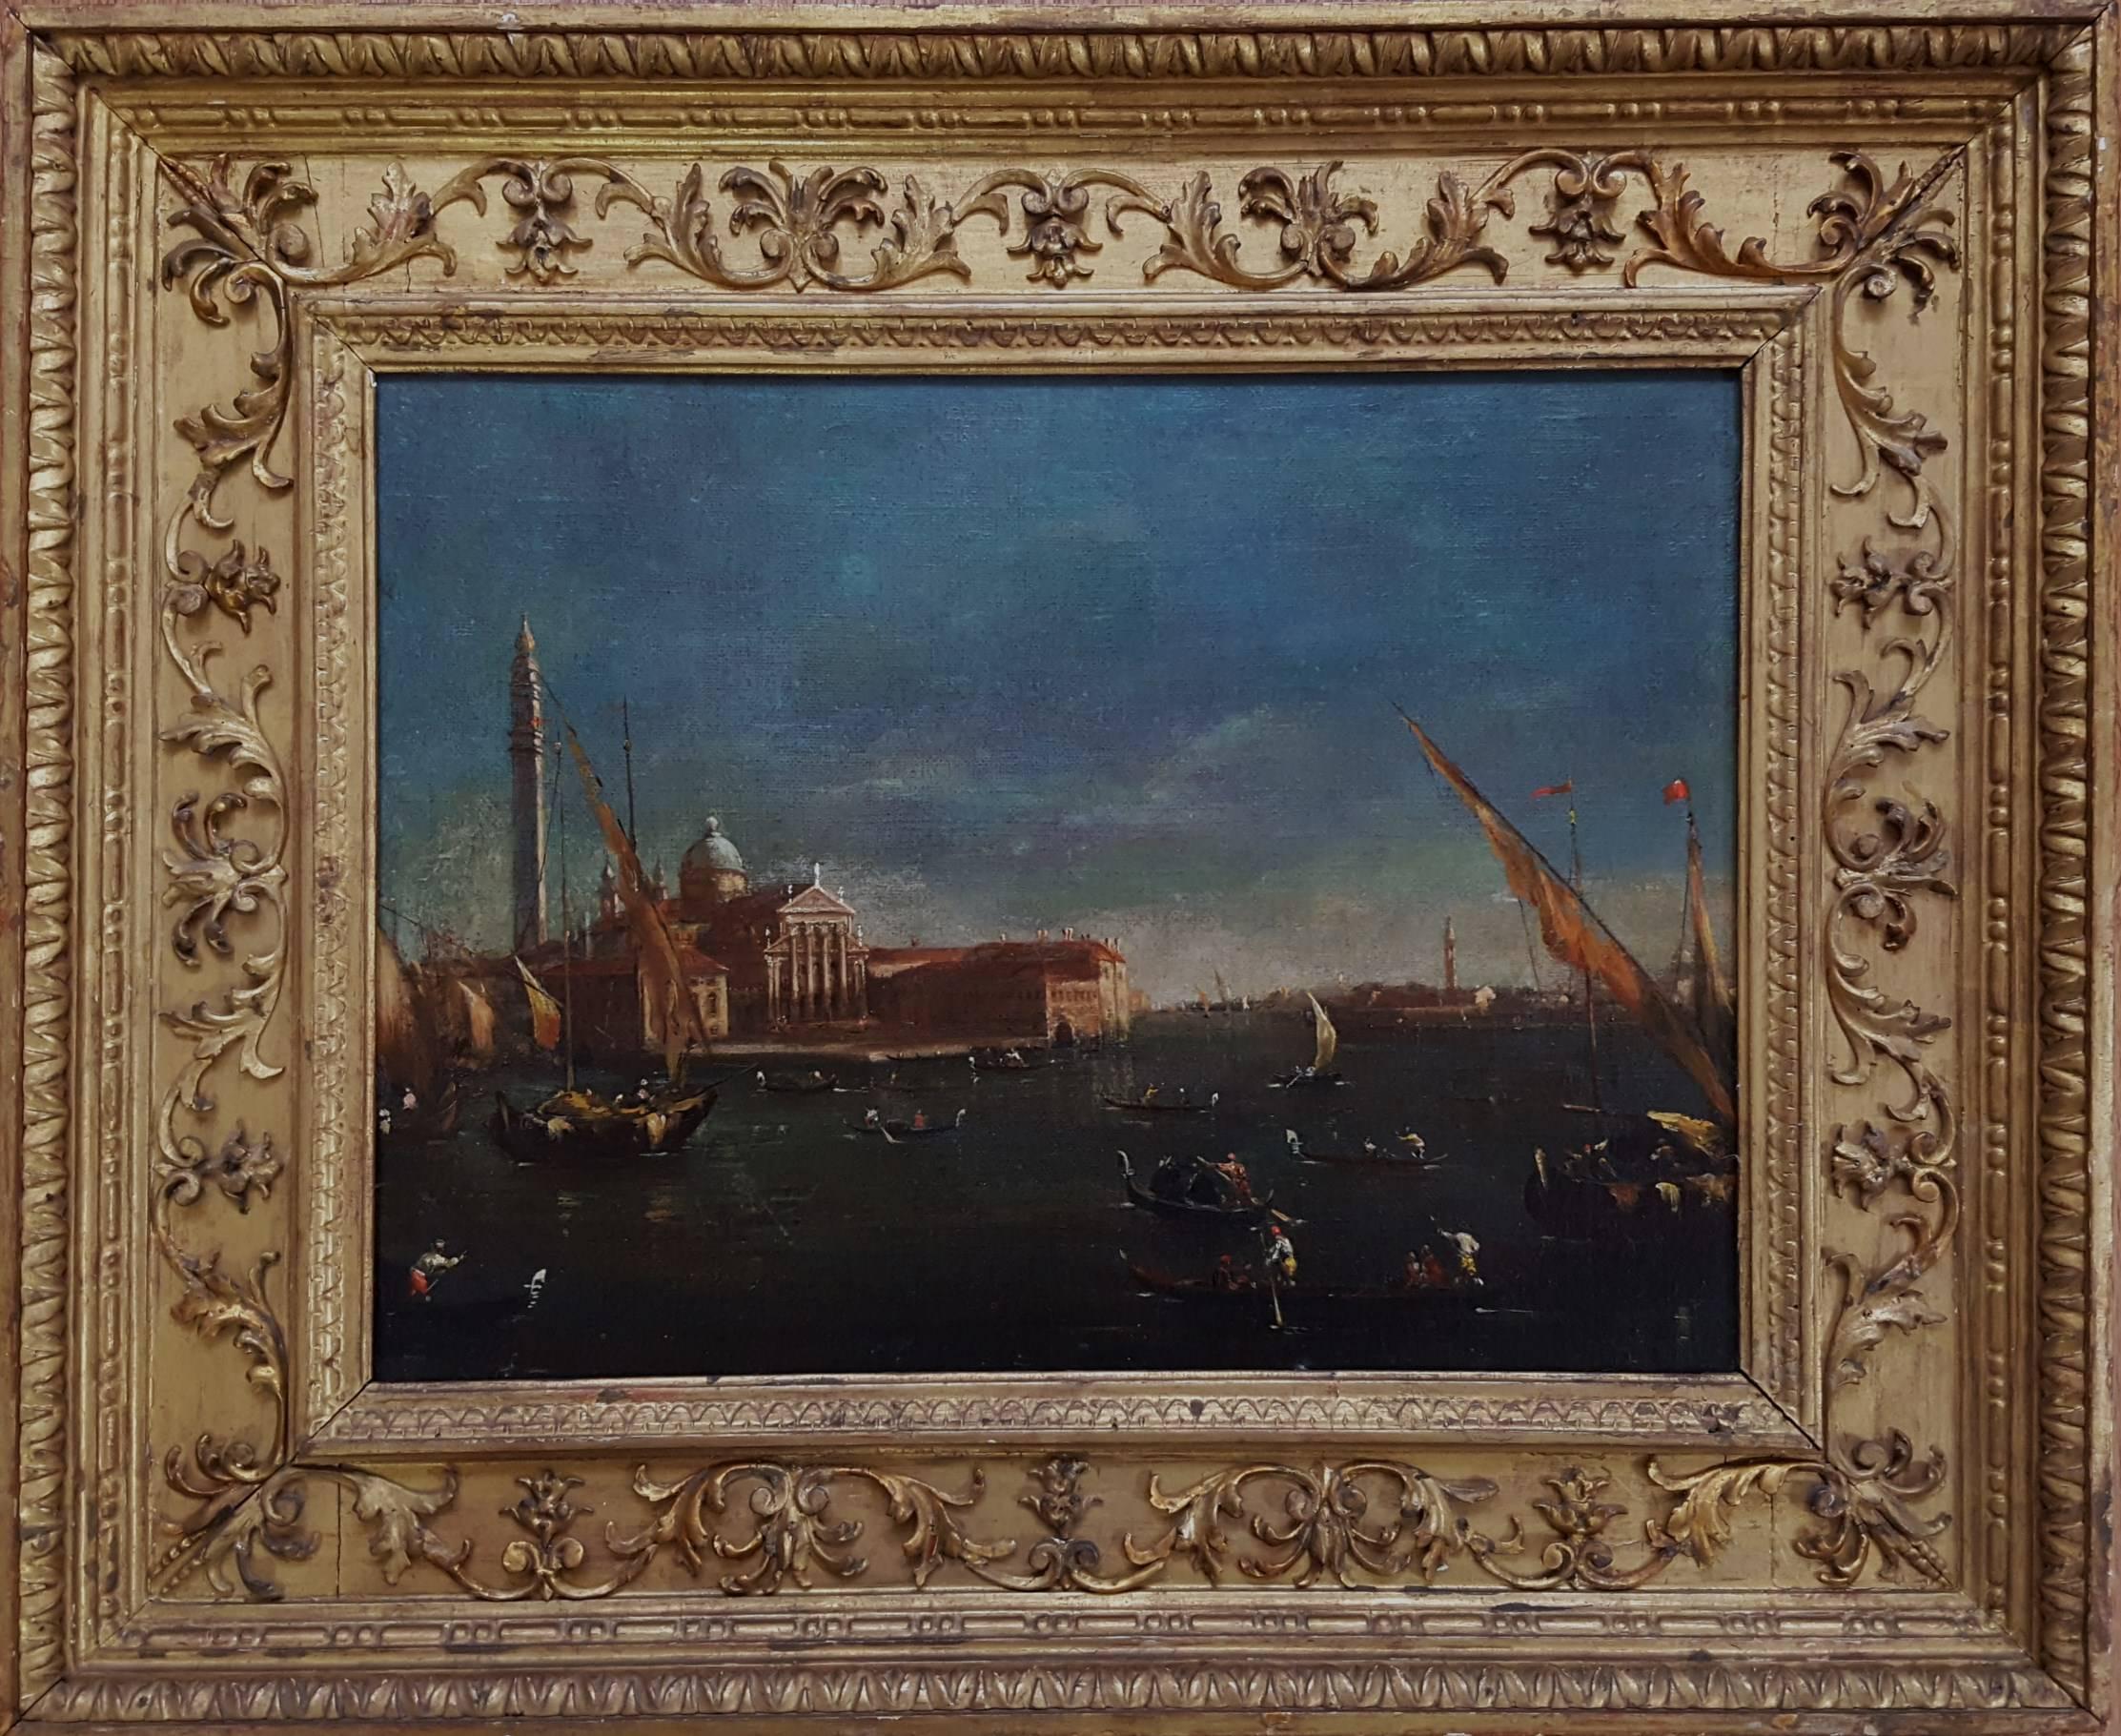 (In the manner of) Franceso Lazzaro Guardi Landscape Painting - San Giorgio Maggiore, Venice